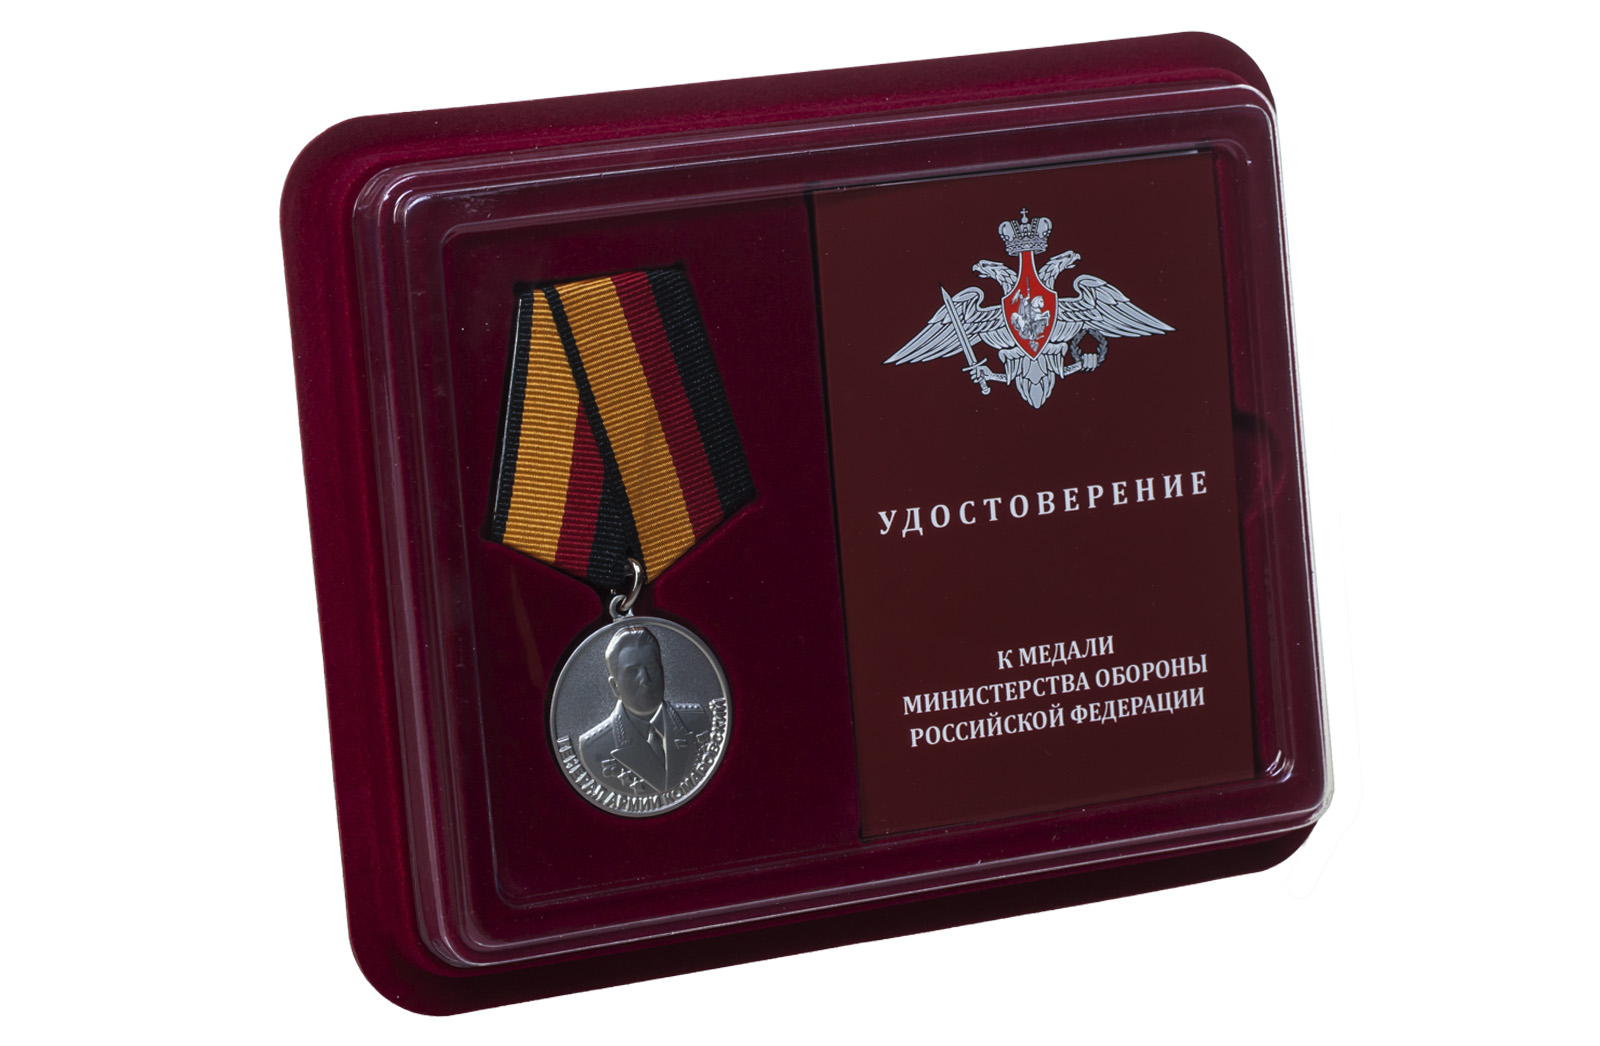 Ведомственная медаль "Генерал армии Комаровский" 